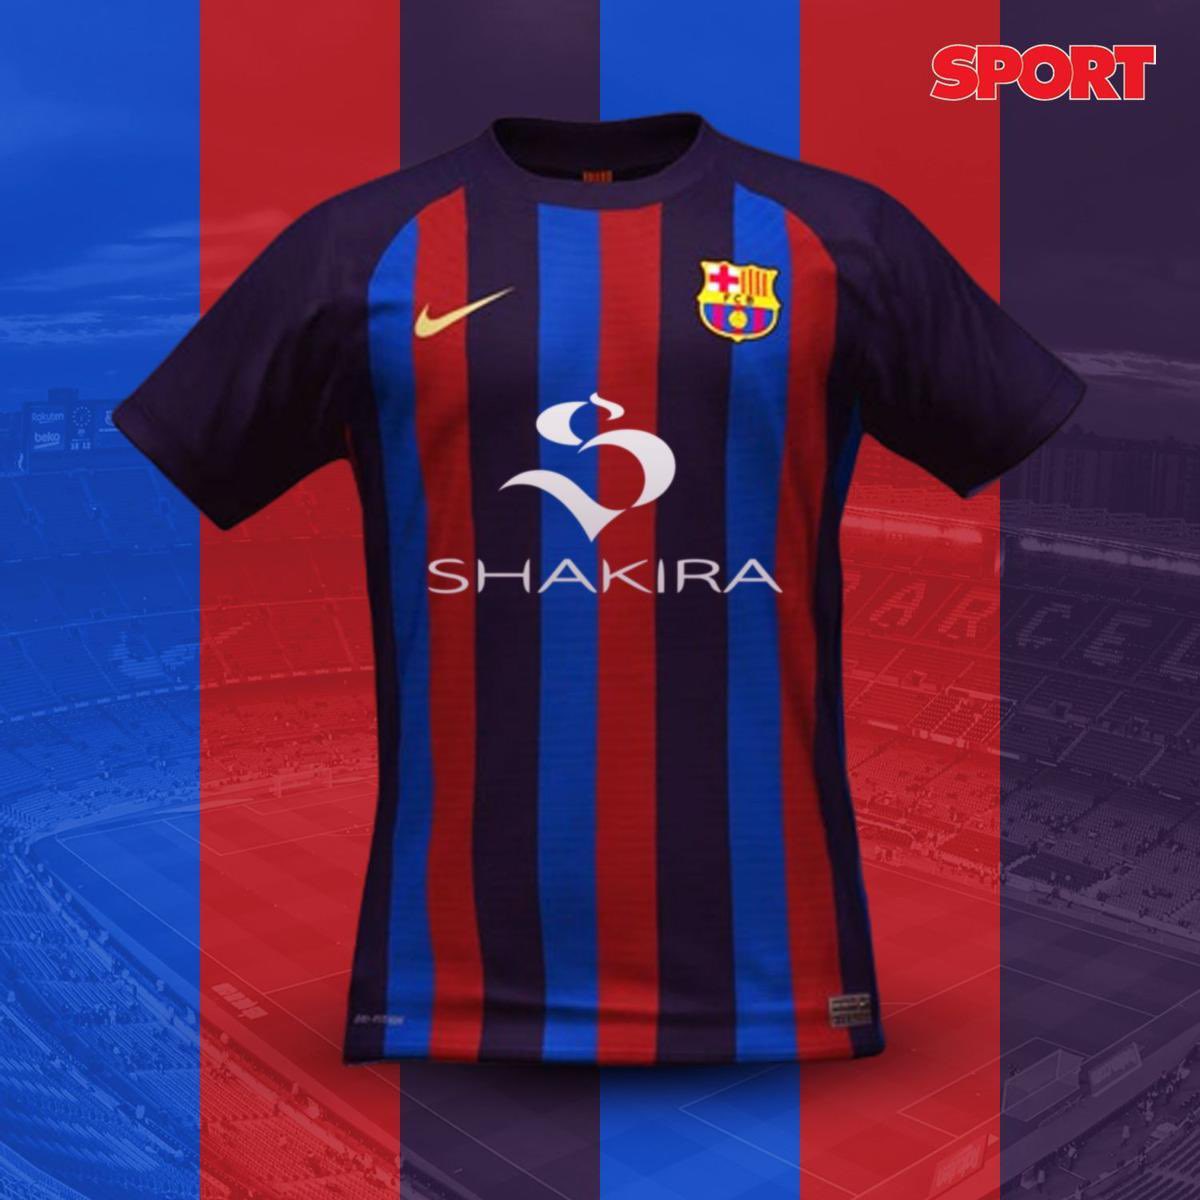 Piqué corre o risco de ter de jogar com nome de Shakira na camisa por causa de patrocínio do Barcelona 1